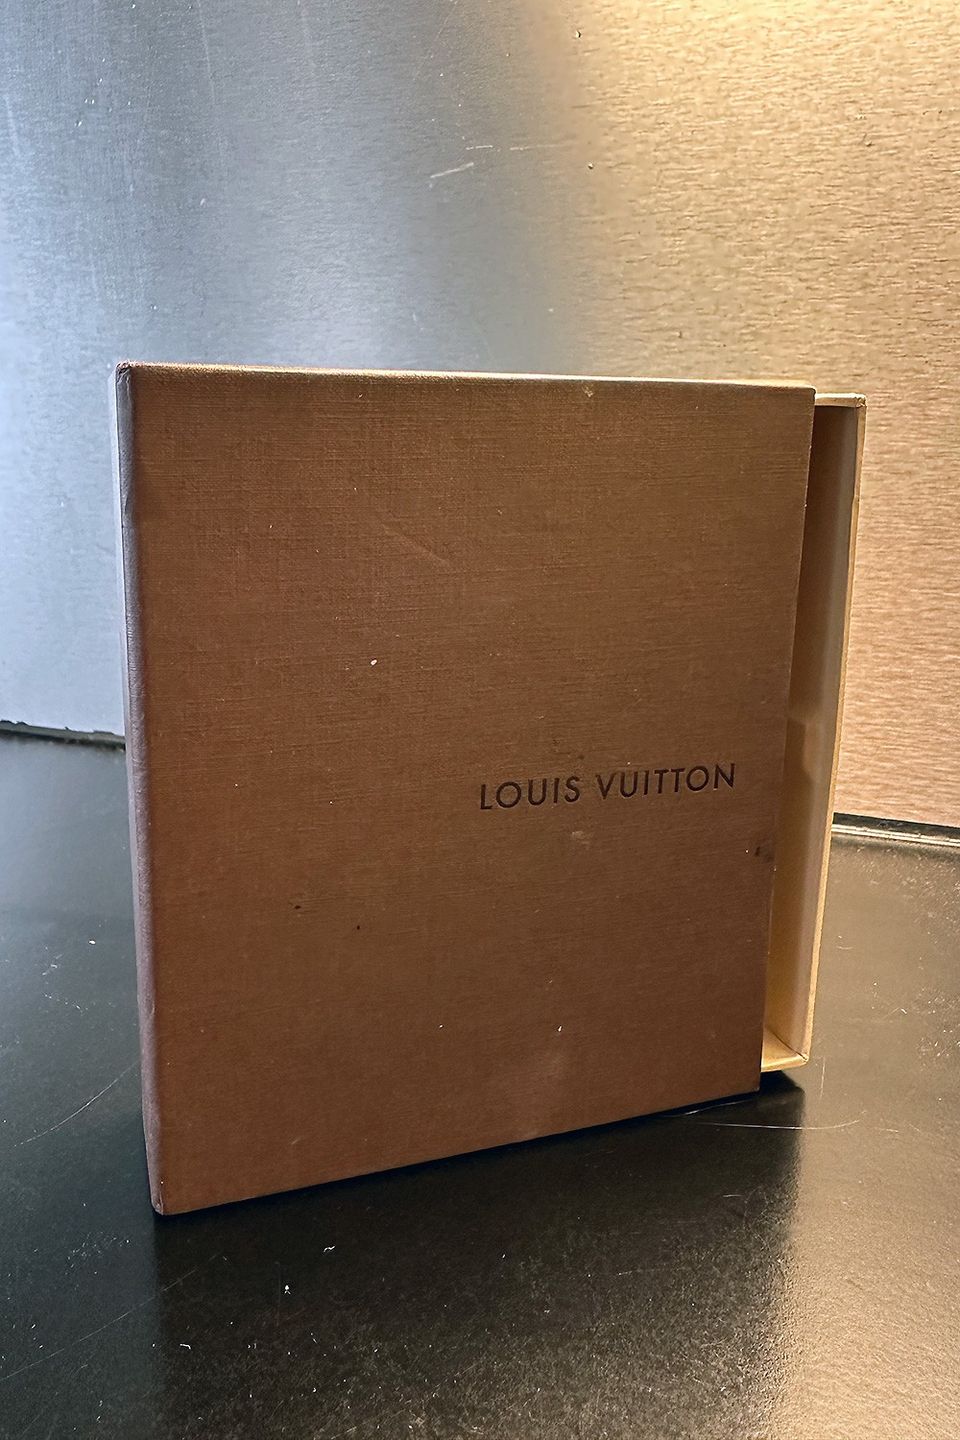 Louis Vuitton laatikko: koko 12x15cm - aito ja alkuperäinen